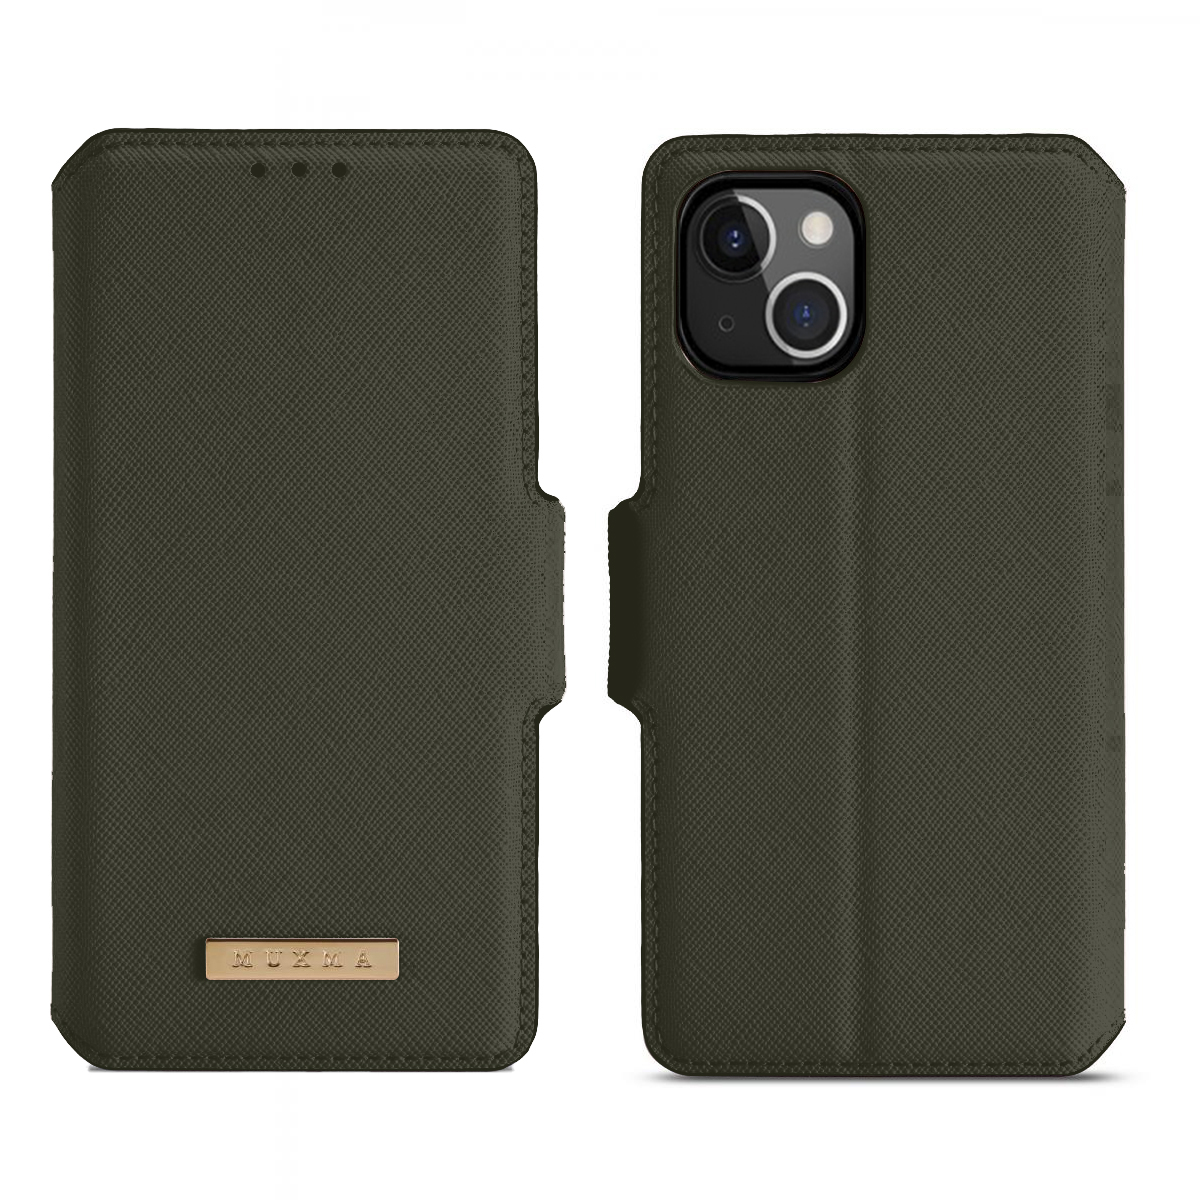 A-One Brand - Muxma Saffiano Plånboksfodral till iPhone 13 Pro Max - Grön